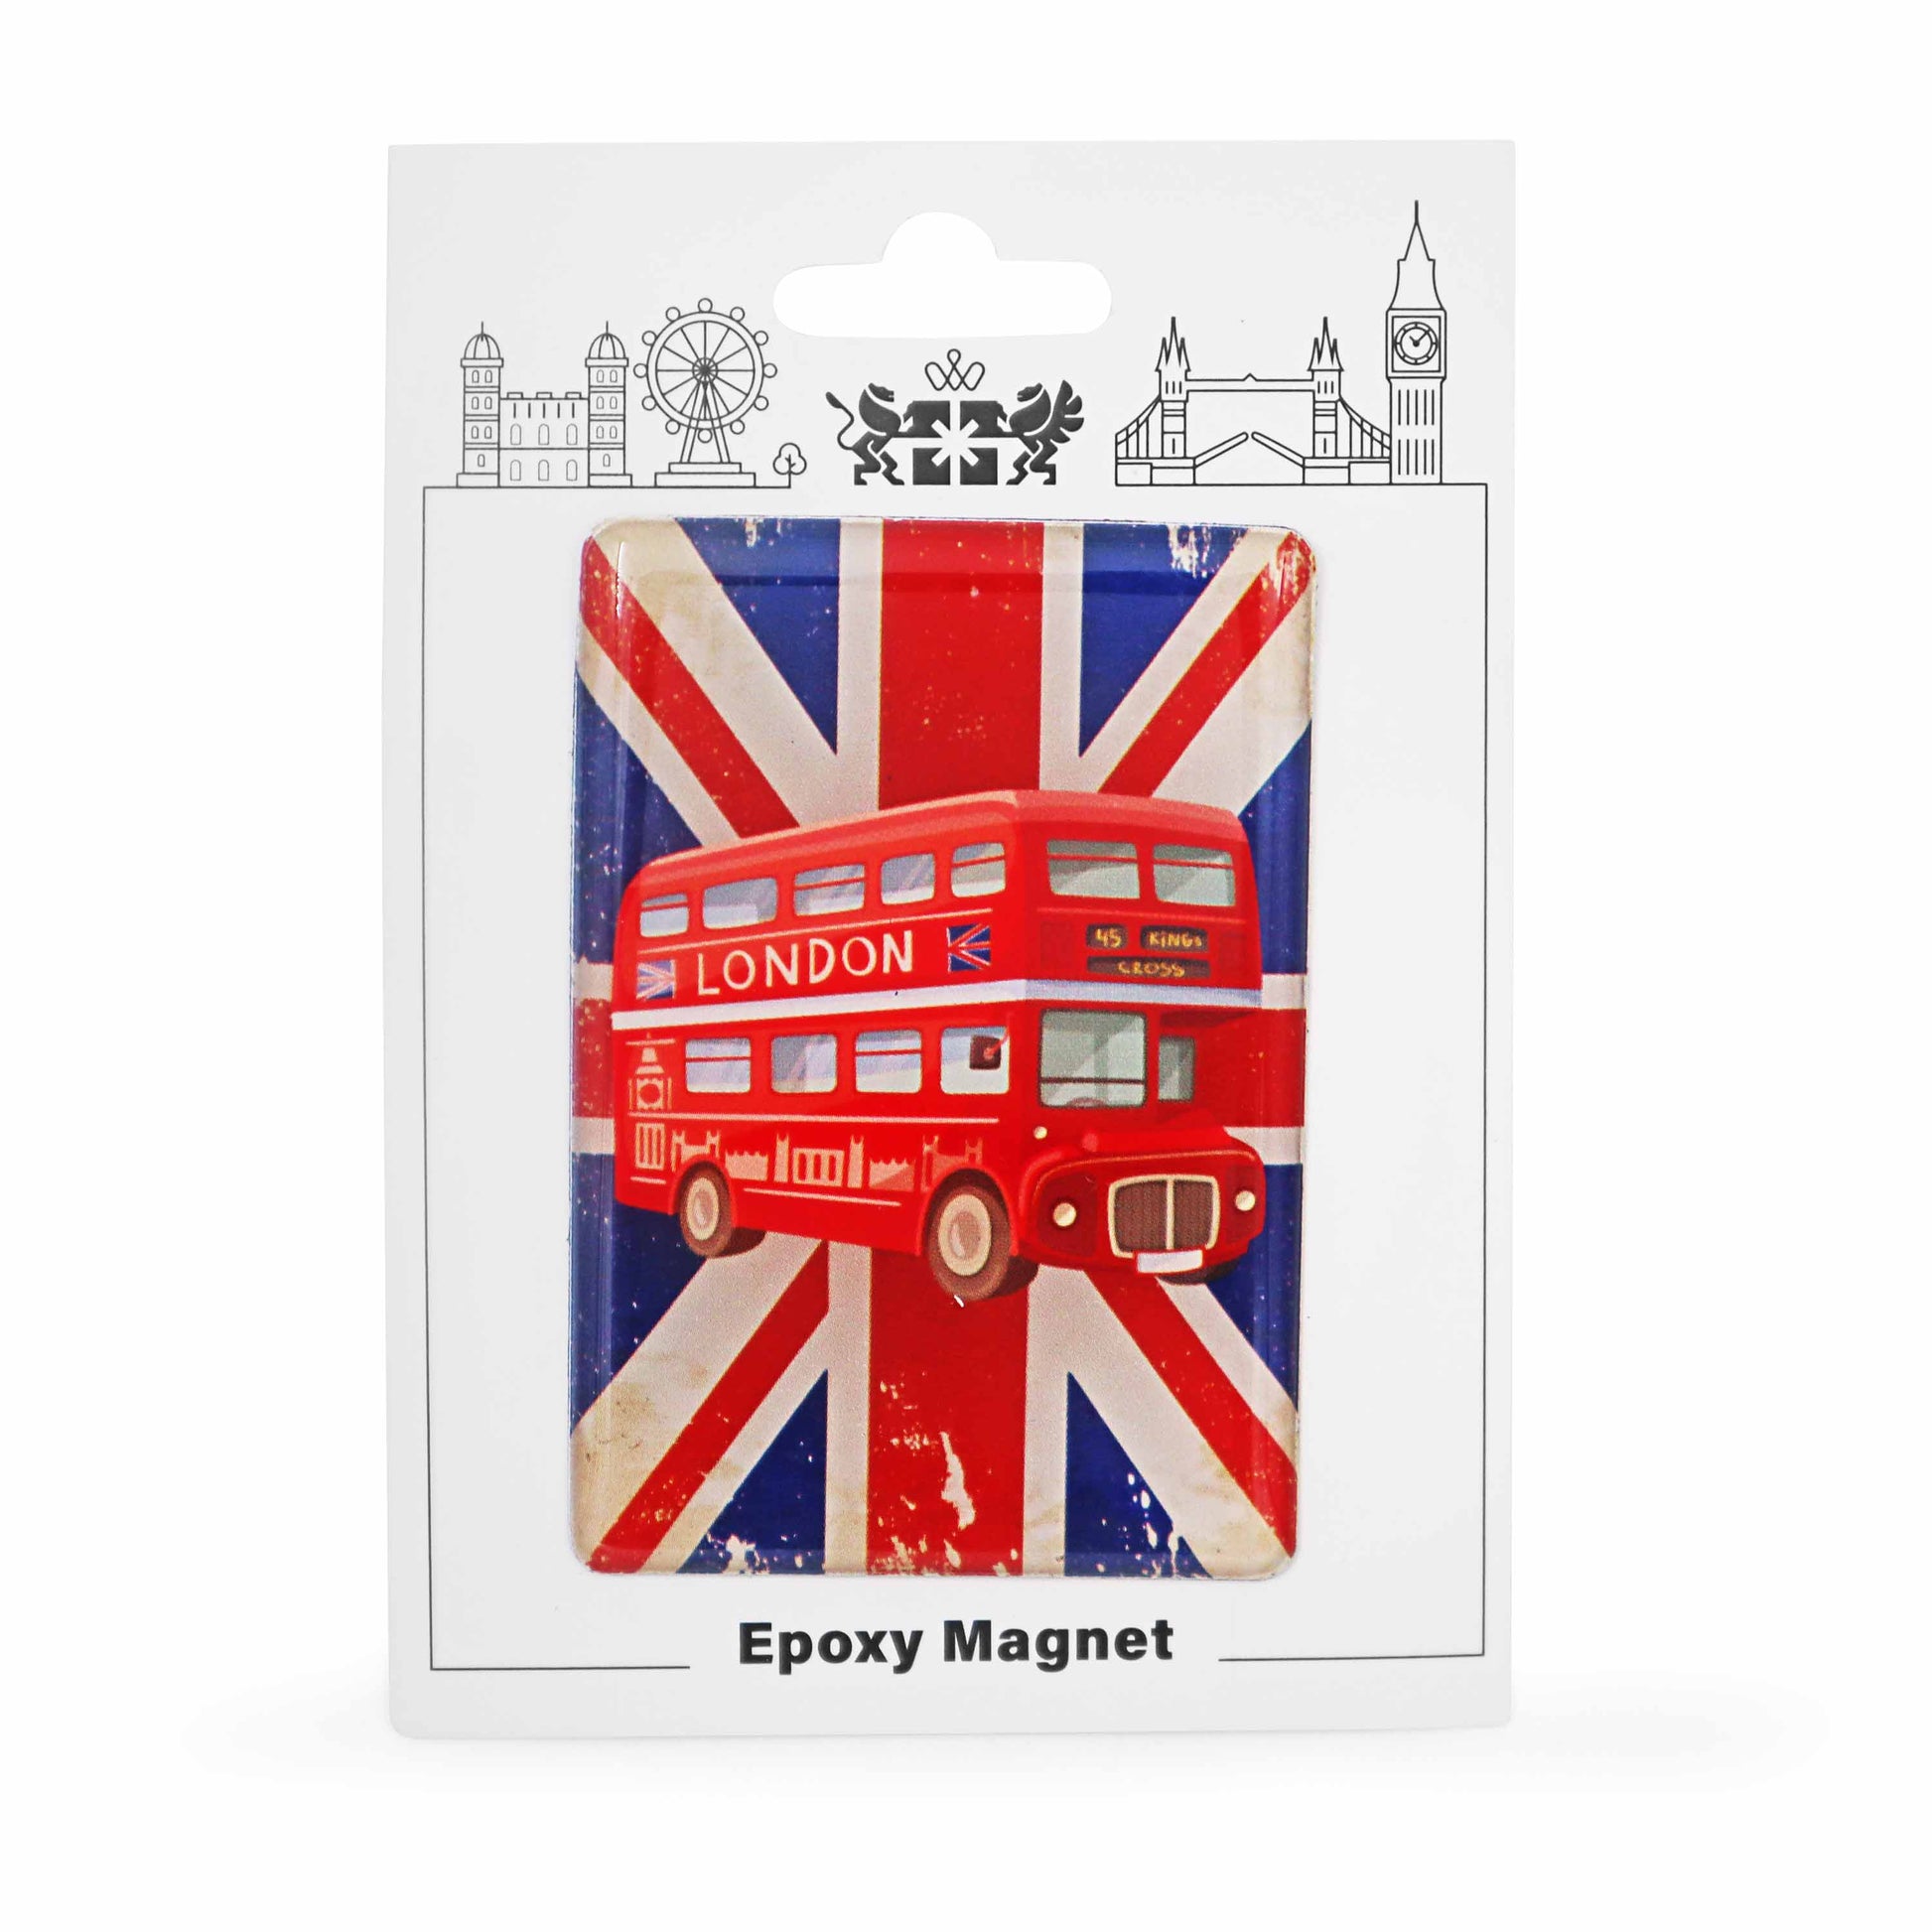 London Souvenir Epoxy Magnet - Design 8 - Union Jack Gift